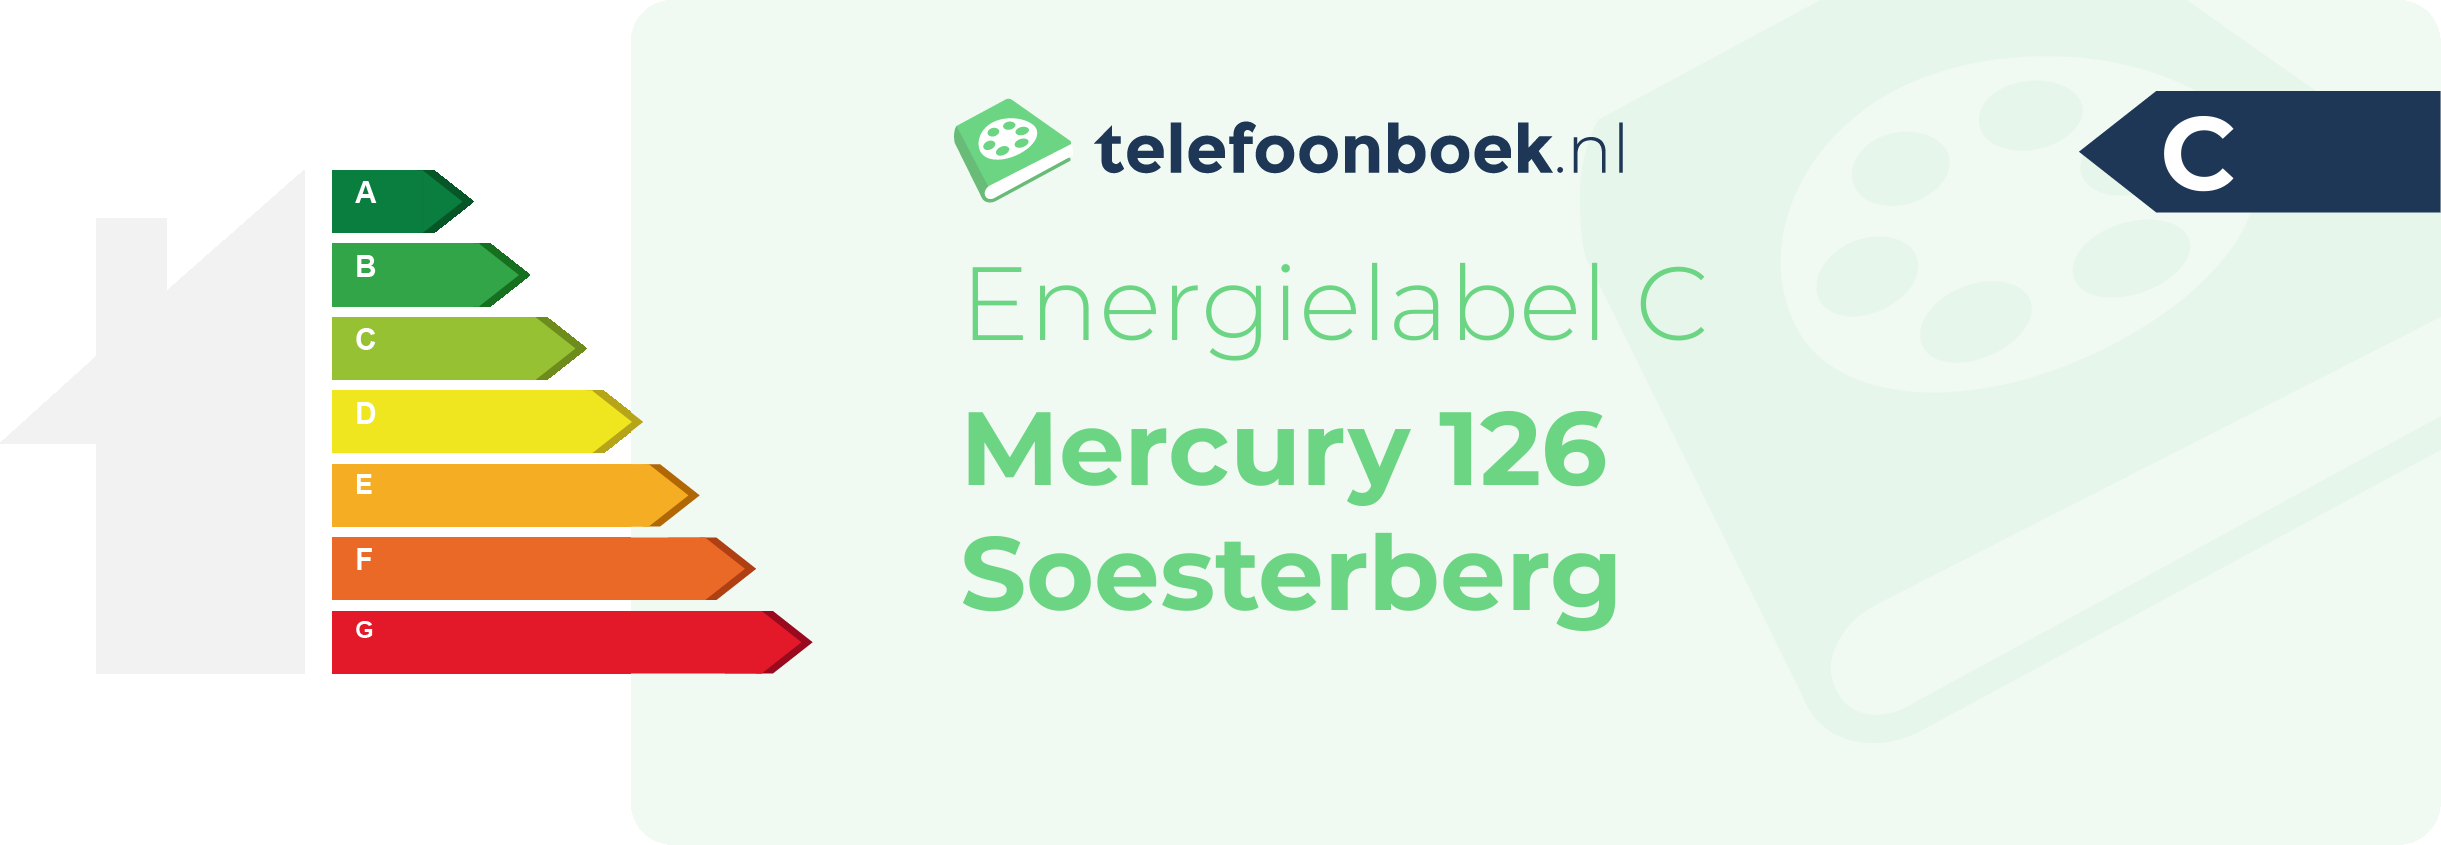 Energielabel Mercury 126 Soesterberg